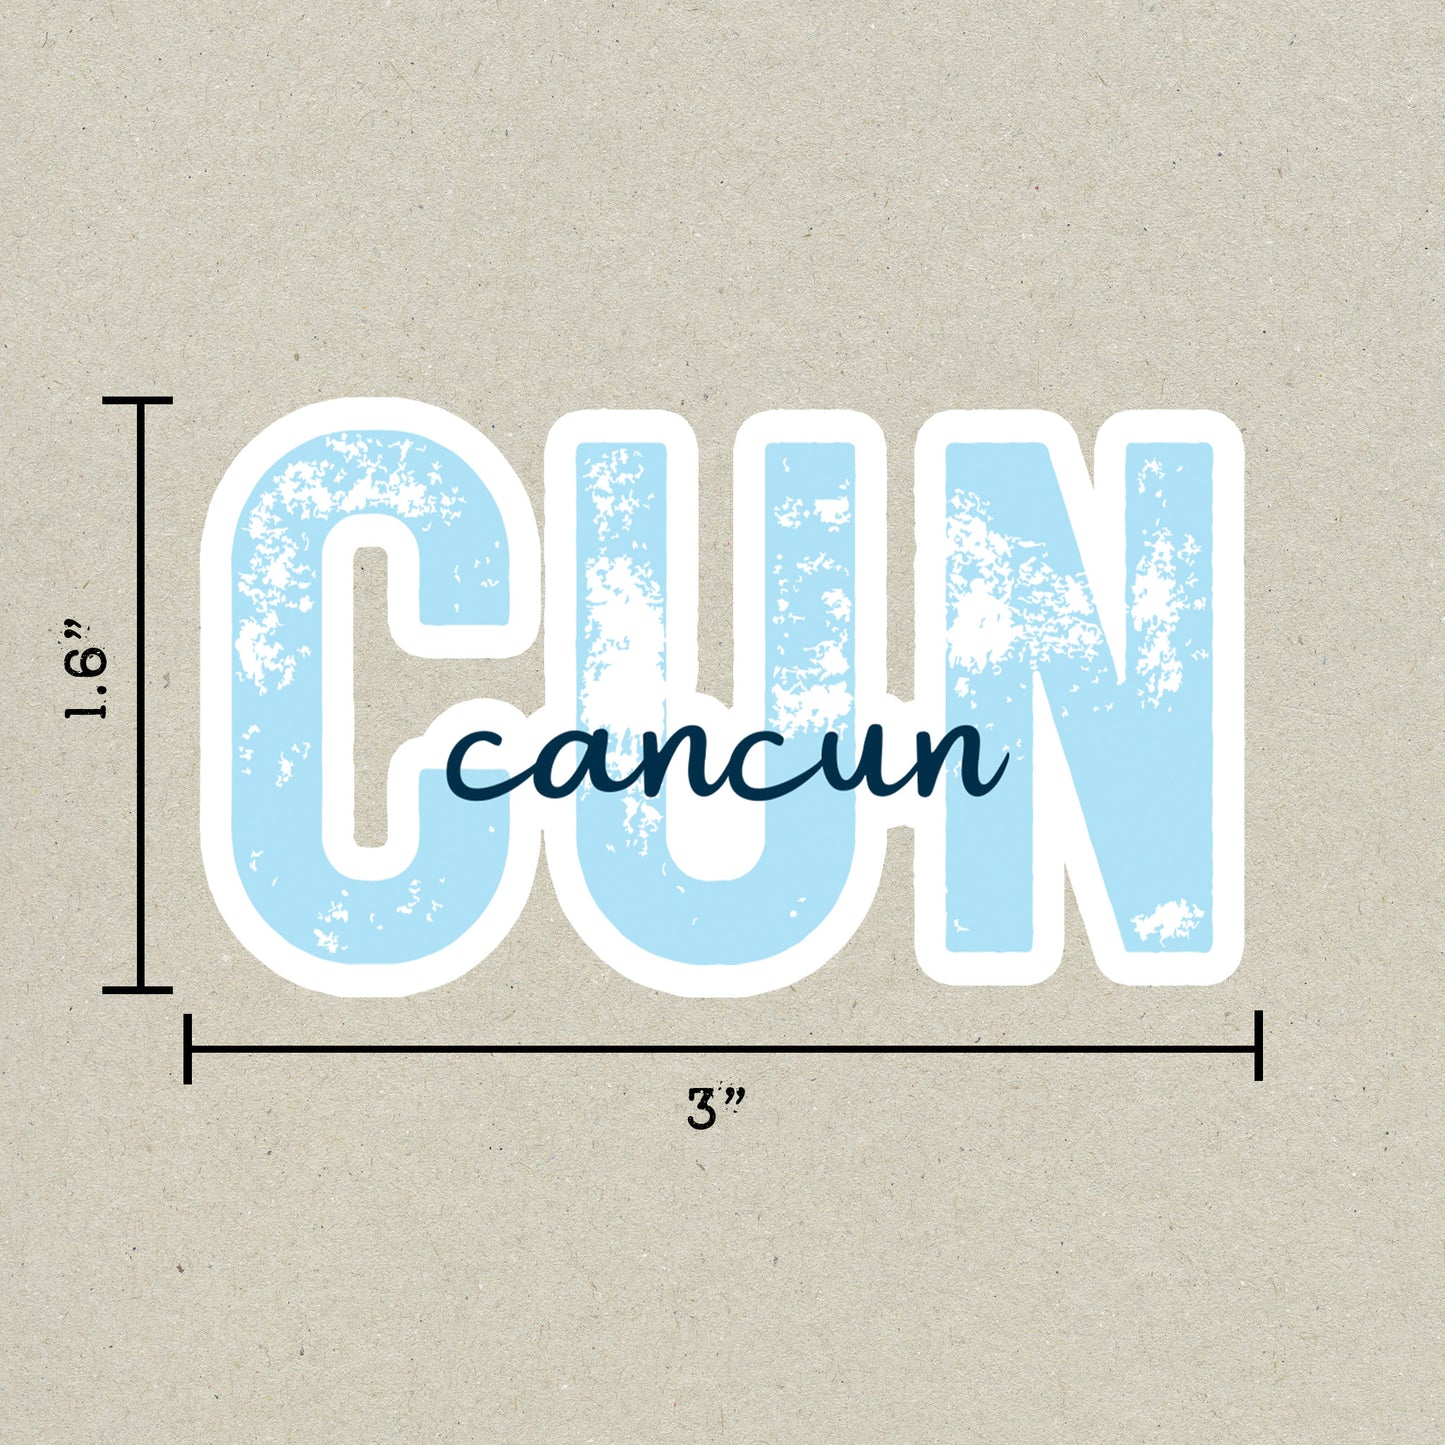 CUN Cancun Airport Code Sticker